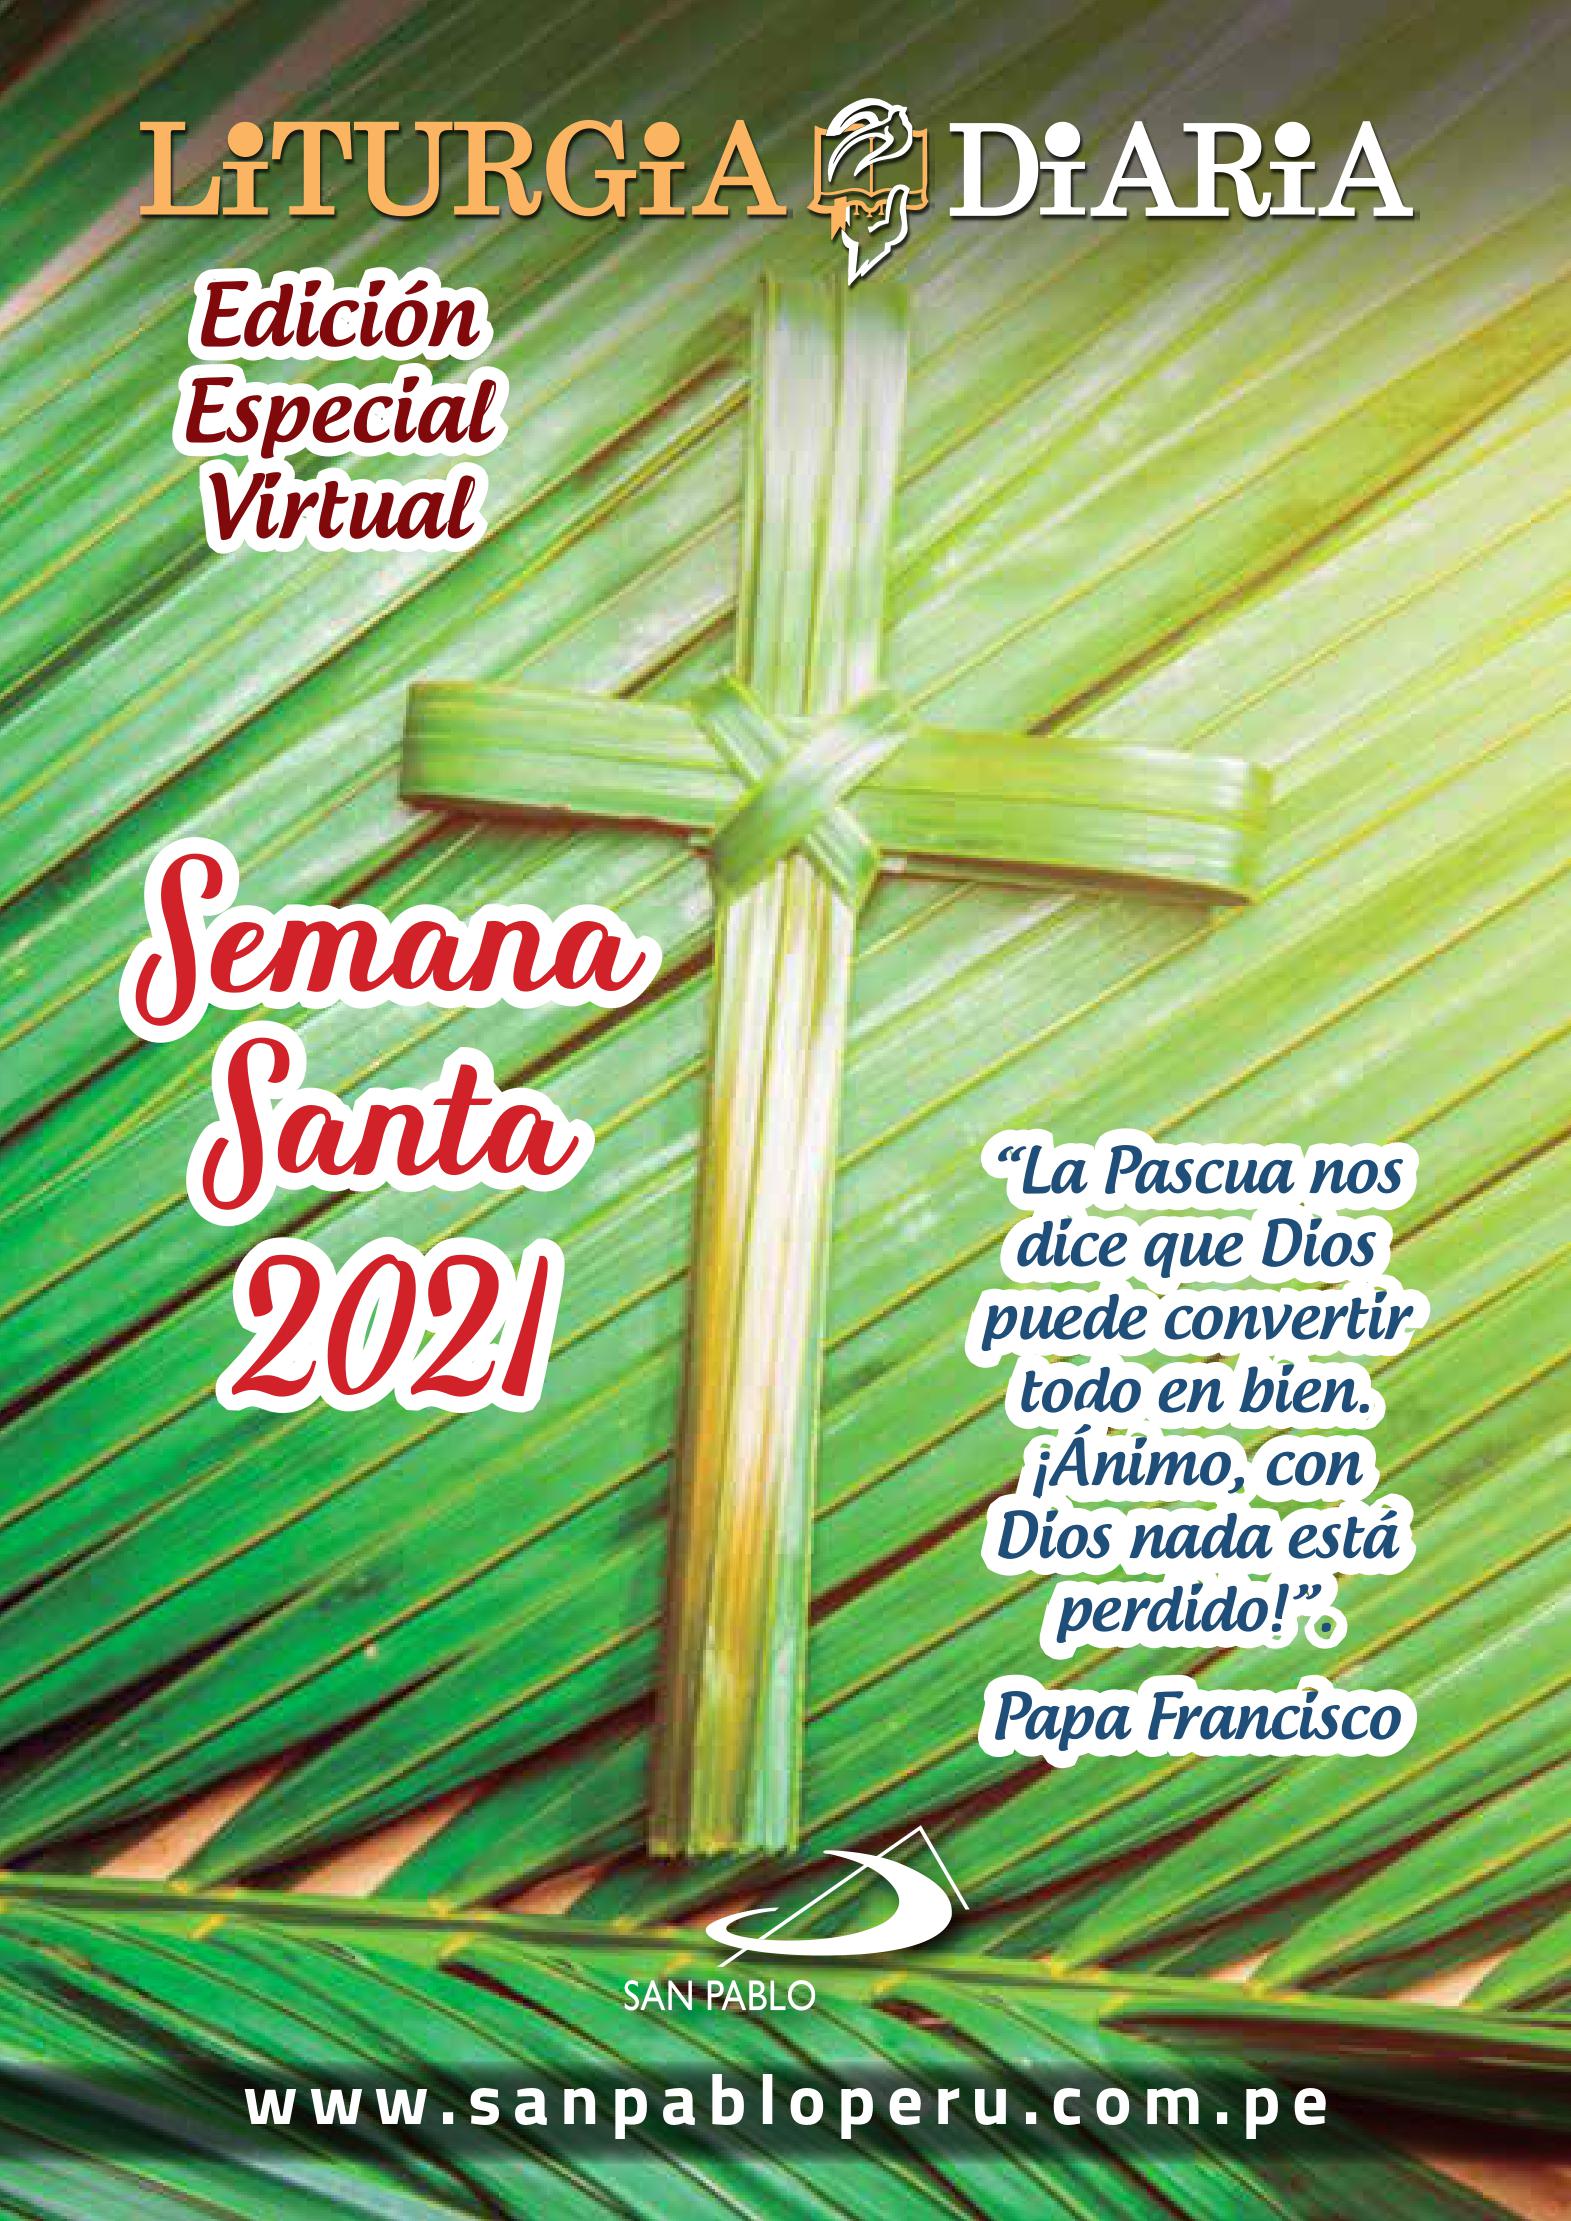 Edición Especial de Semana Santa de la Liturgia Diaria 2021